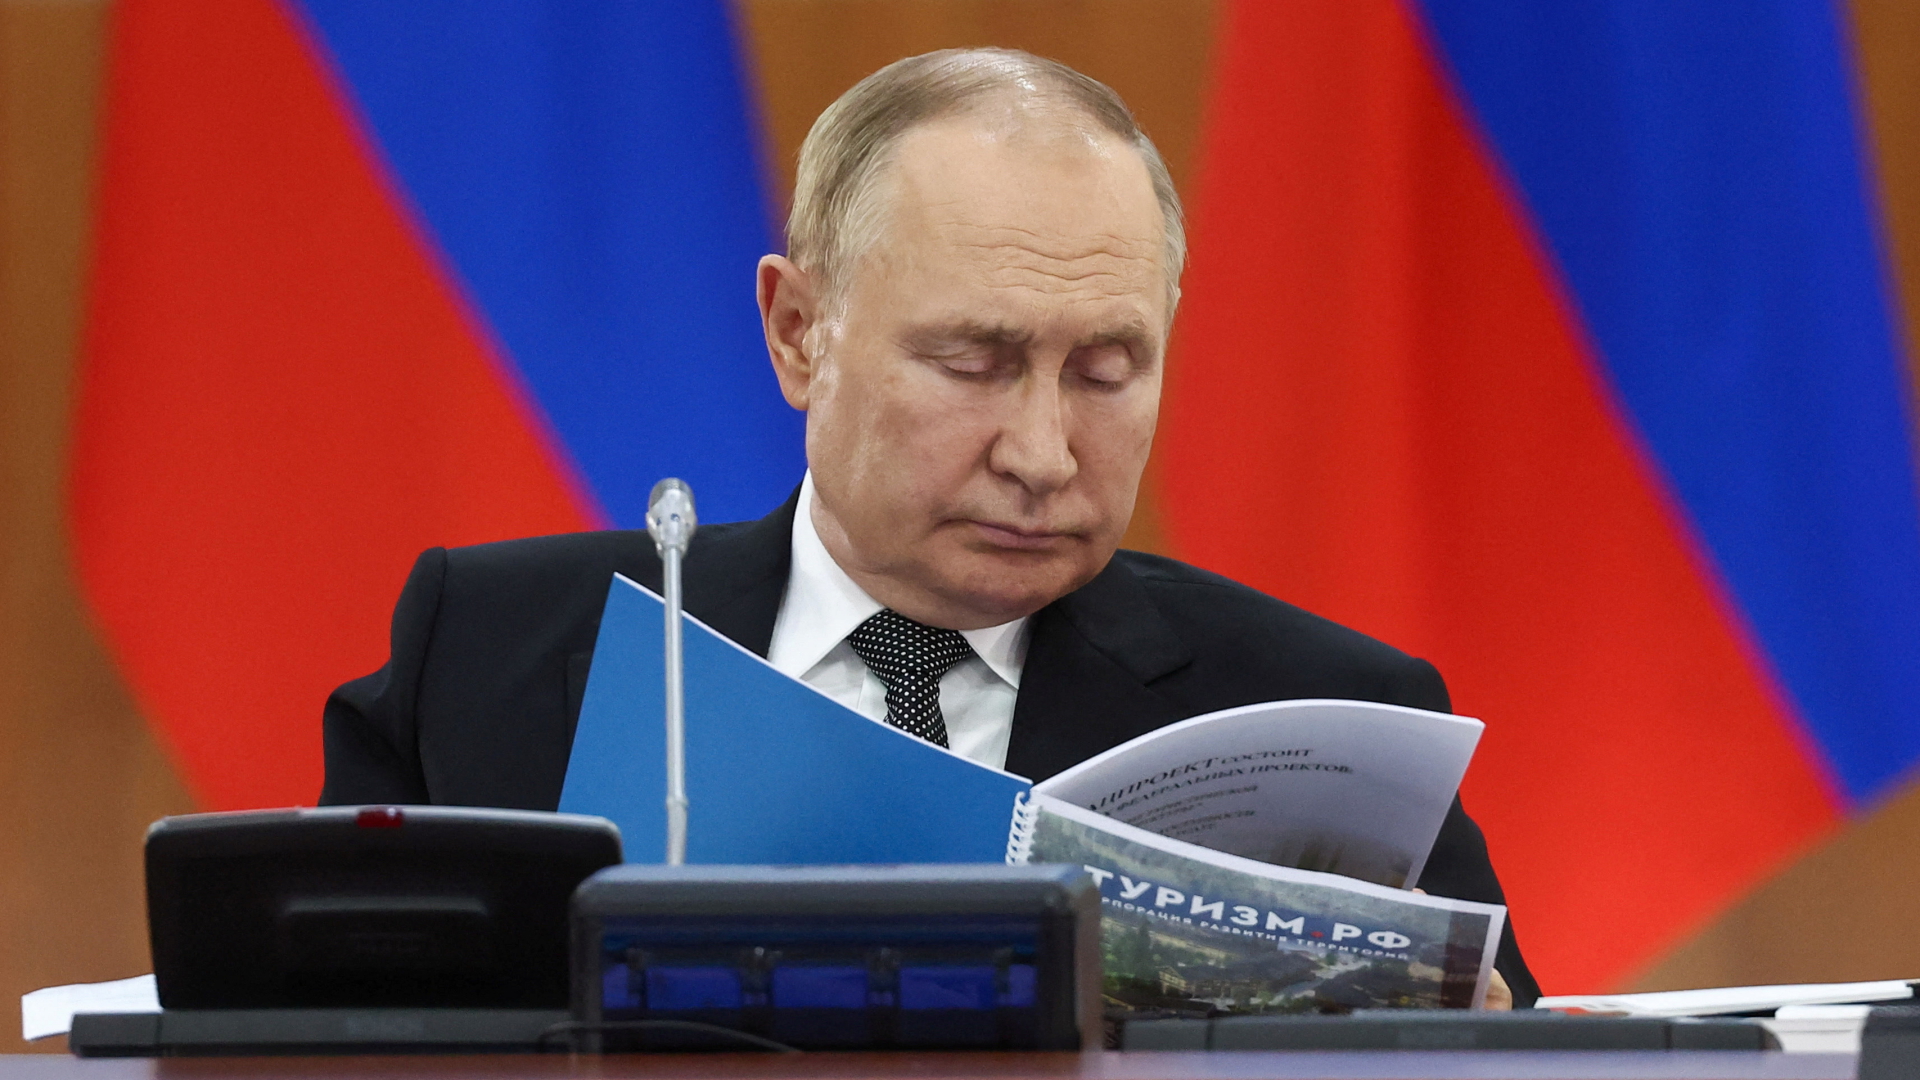 Wladimir Putin studiert eine Broschüre über den Tourismus in Russland | via REUTERS